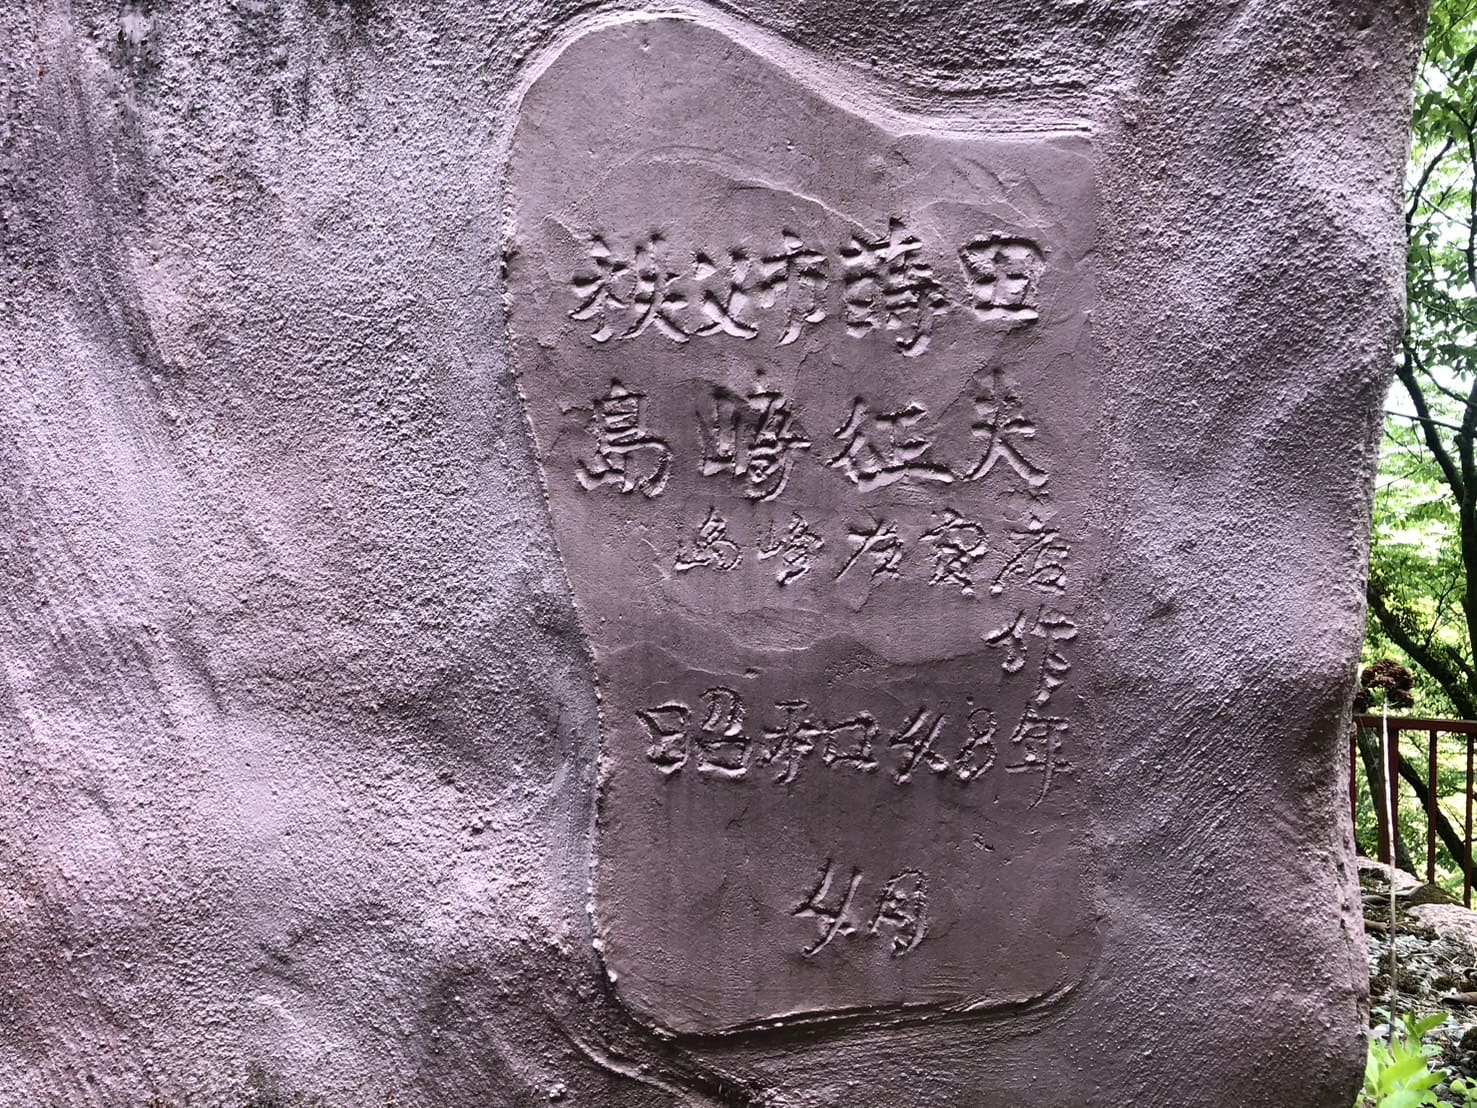 秩父華厳の滝にある空滝大不動尊に刻まれている製作者と生年月日